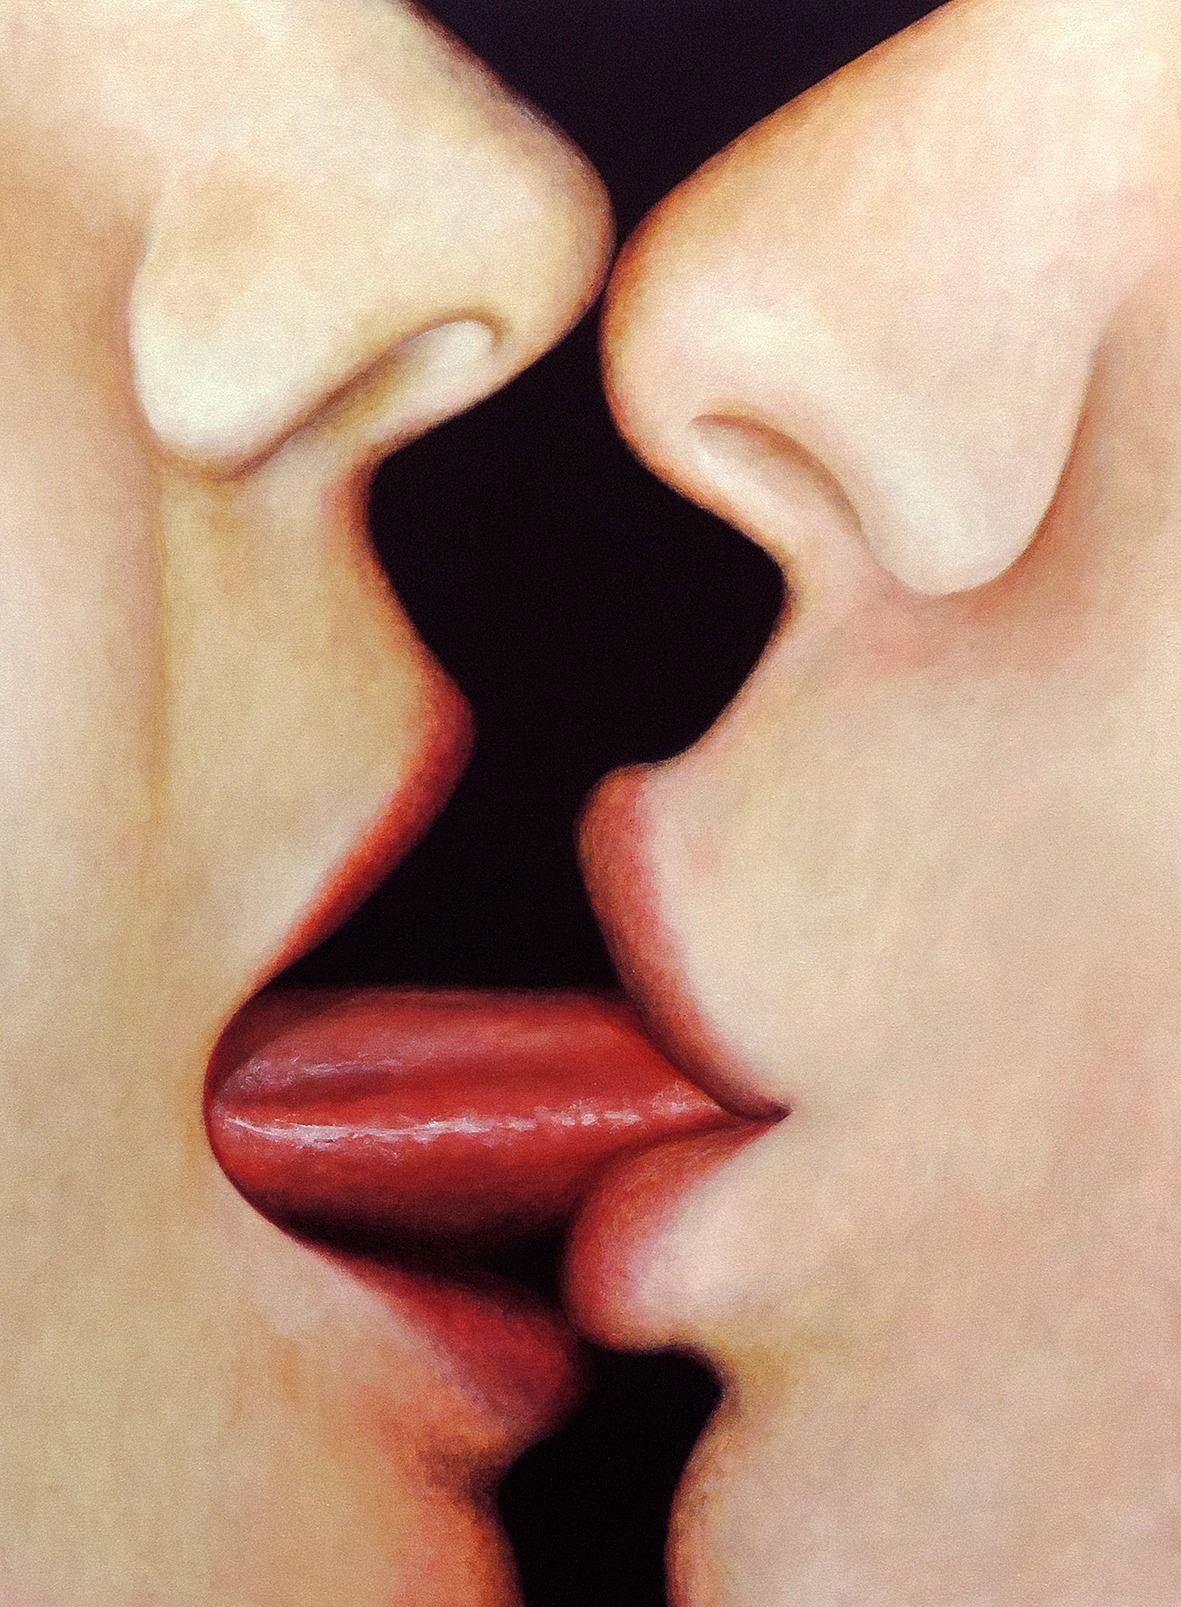 Lesbian boy. Поцелуй с языком. Поцелуй в губы. Французский поцелуй. Целующие губы.